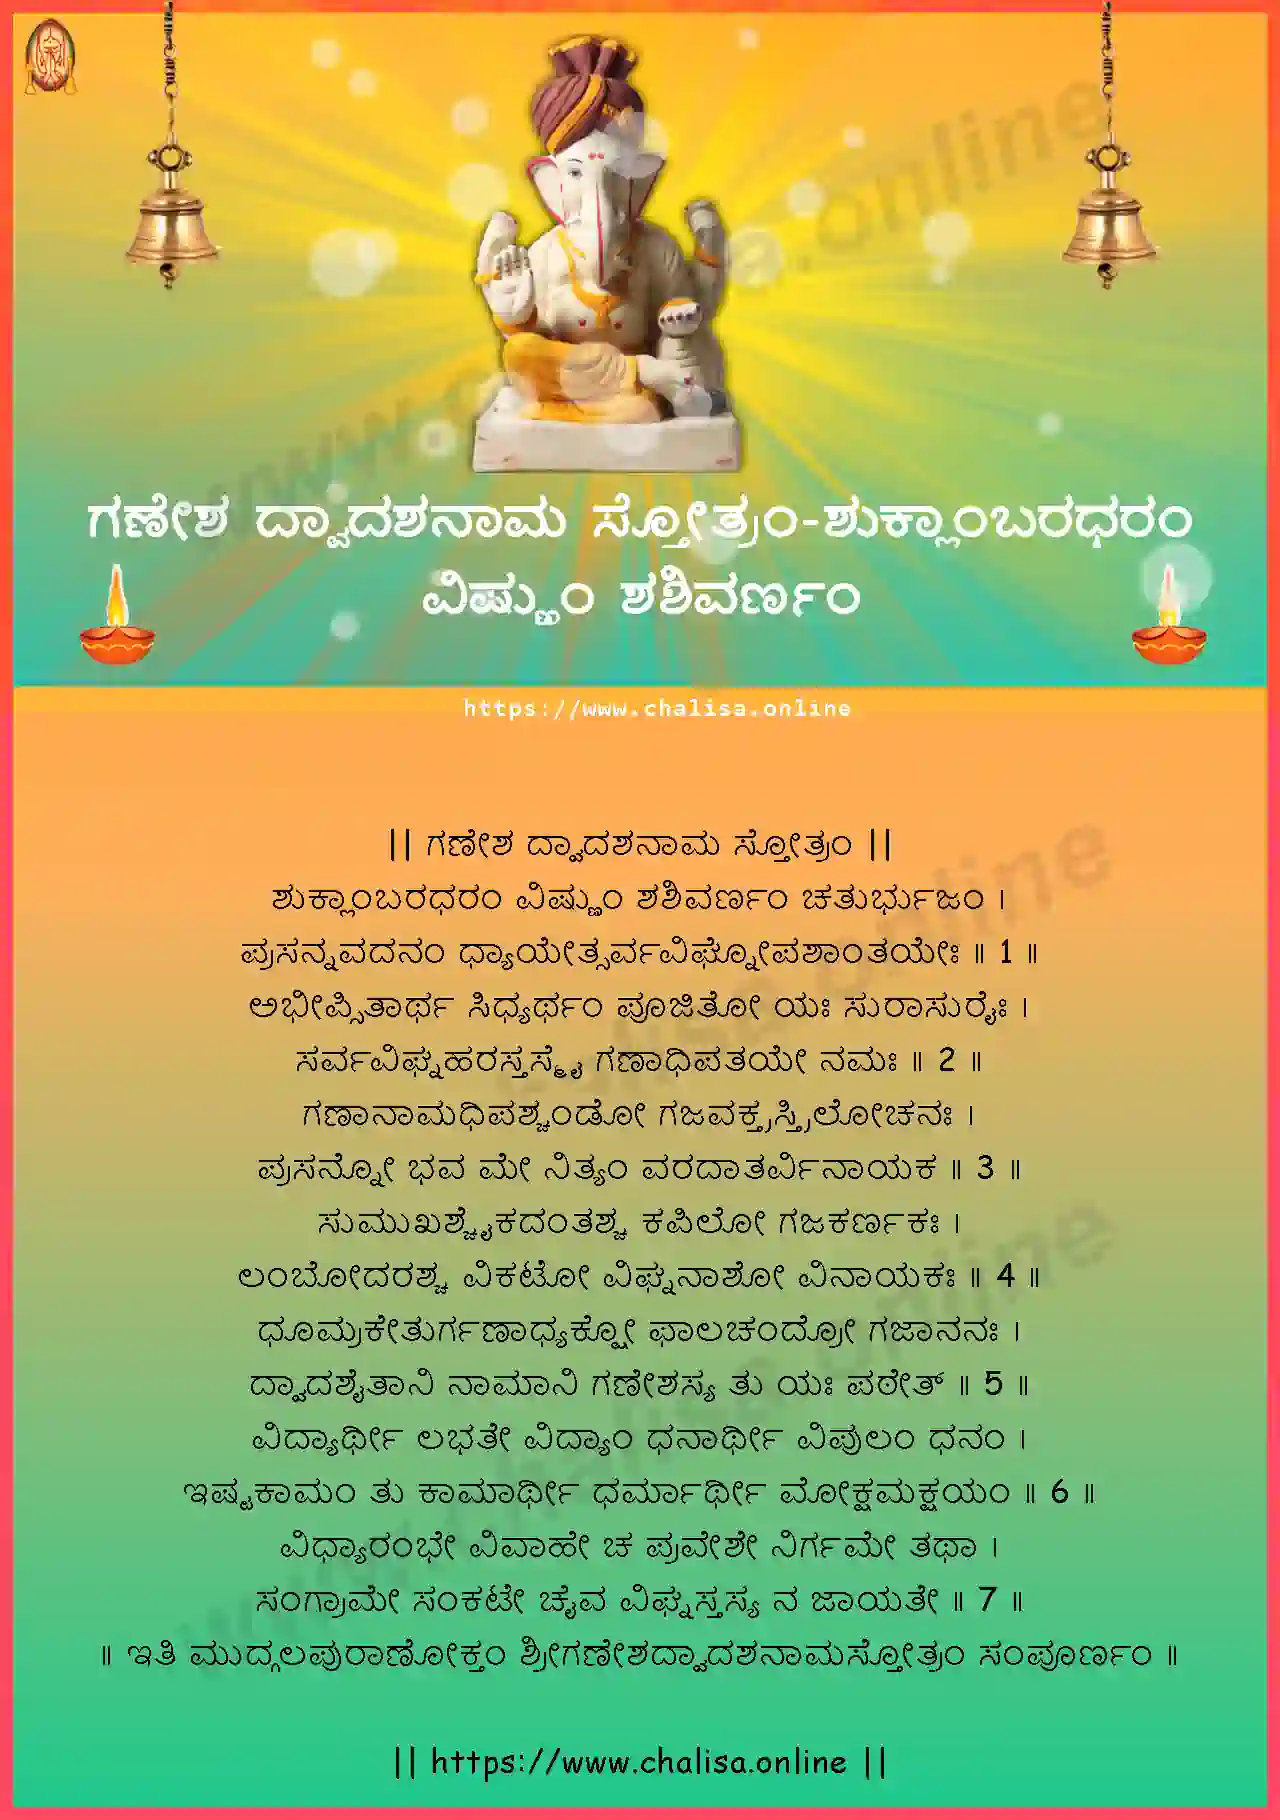 suklambaradharam-ganesha-dwadashanama-stotram-kannada-kannada-lyrics-download